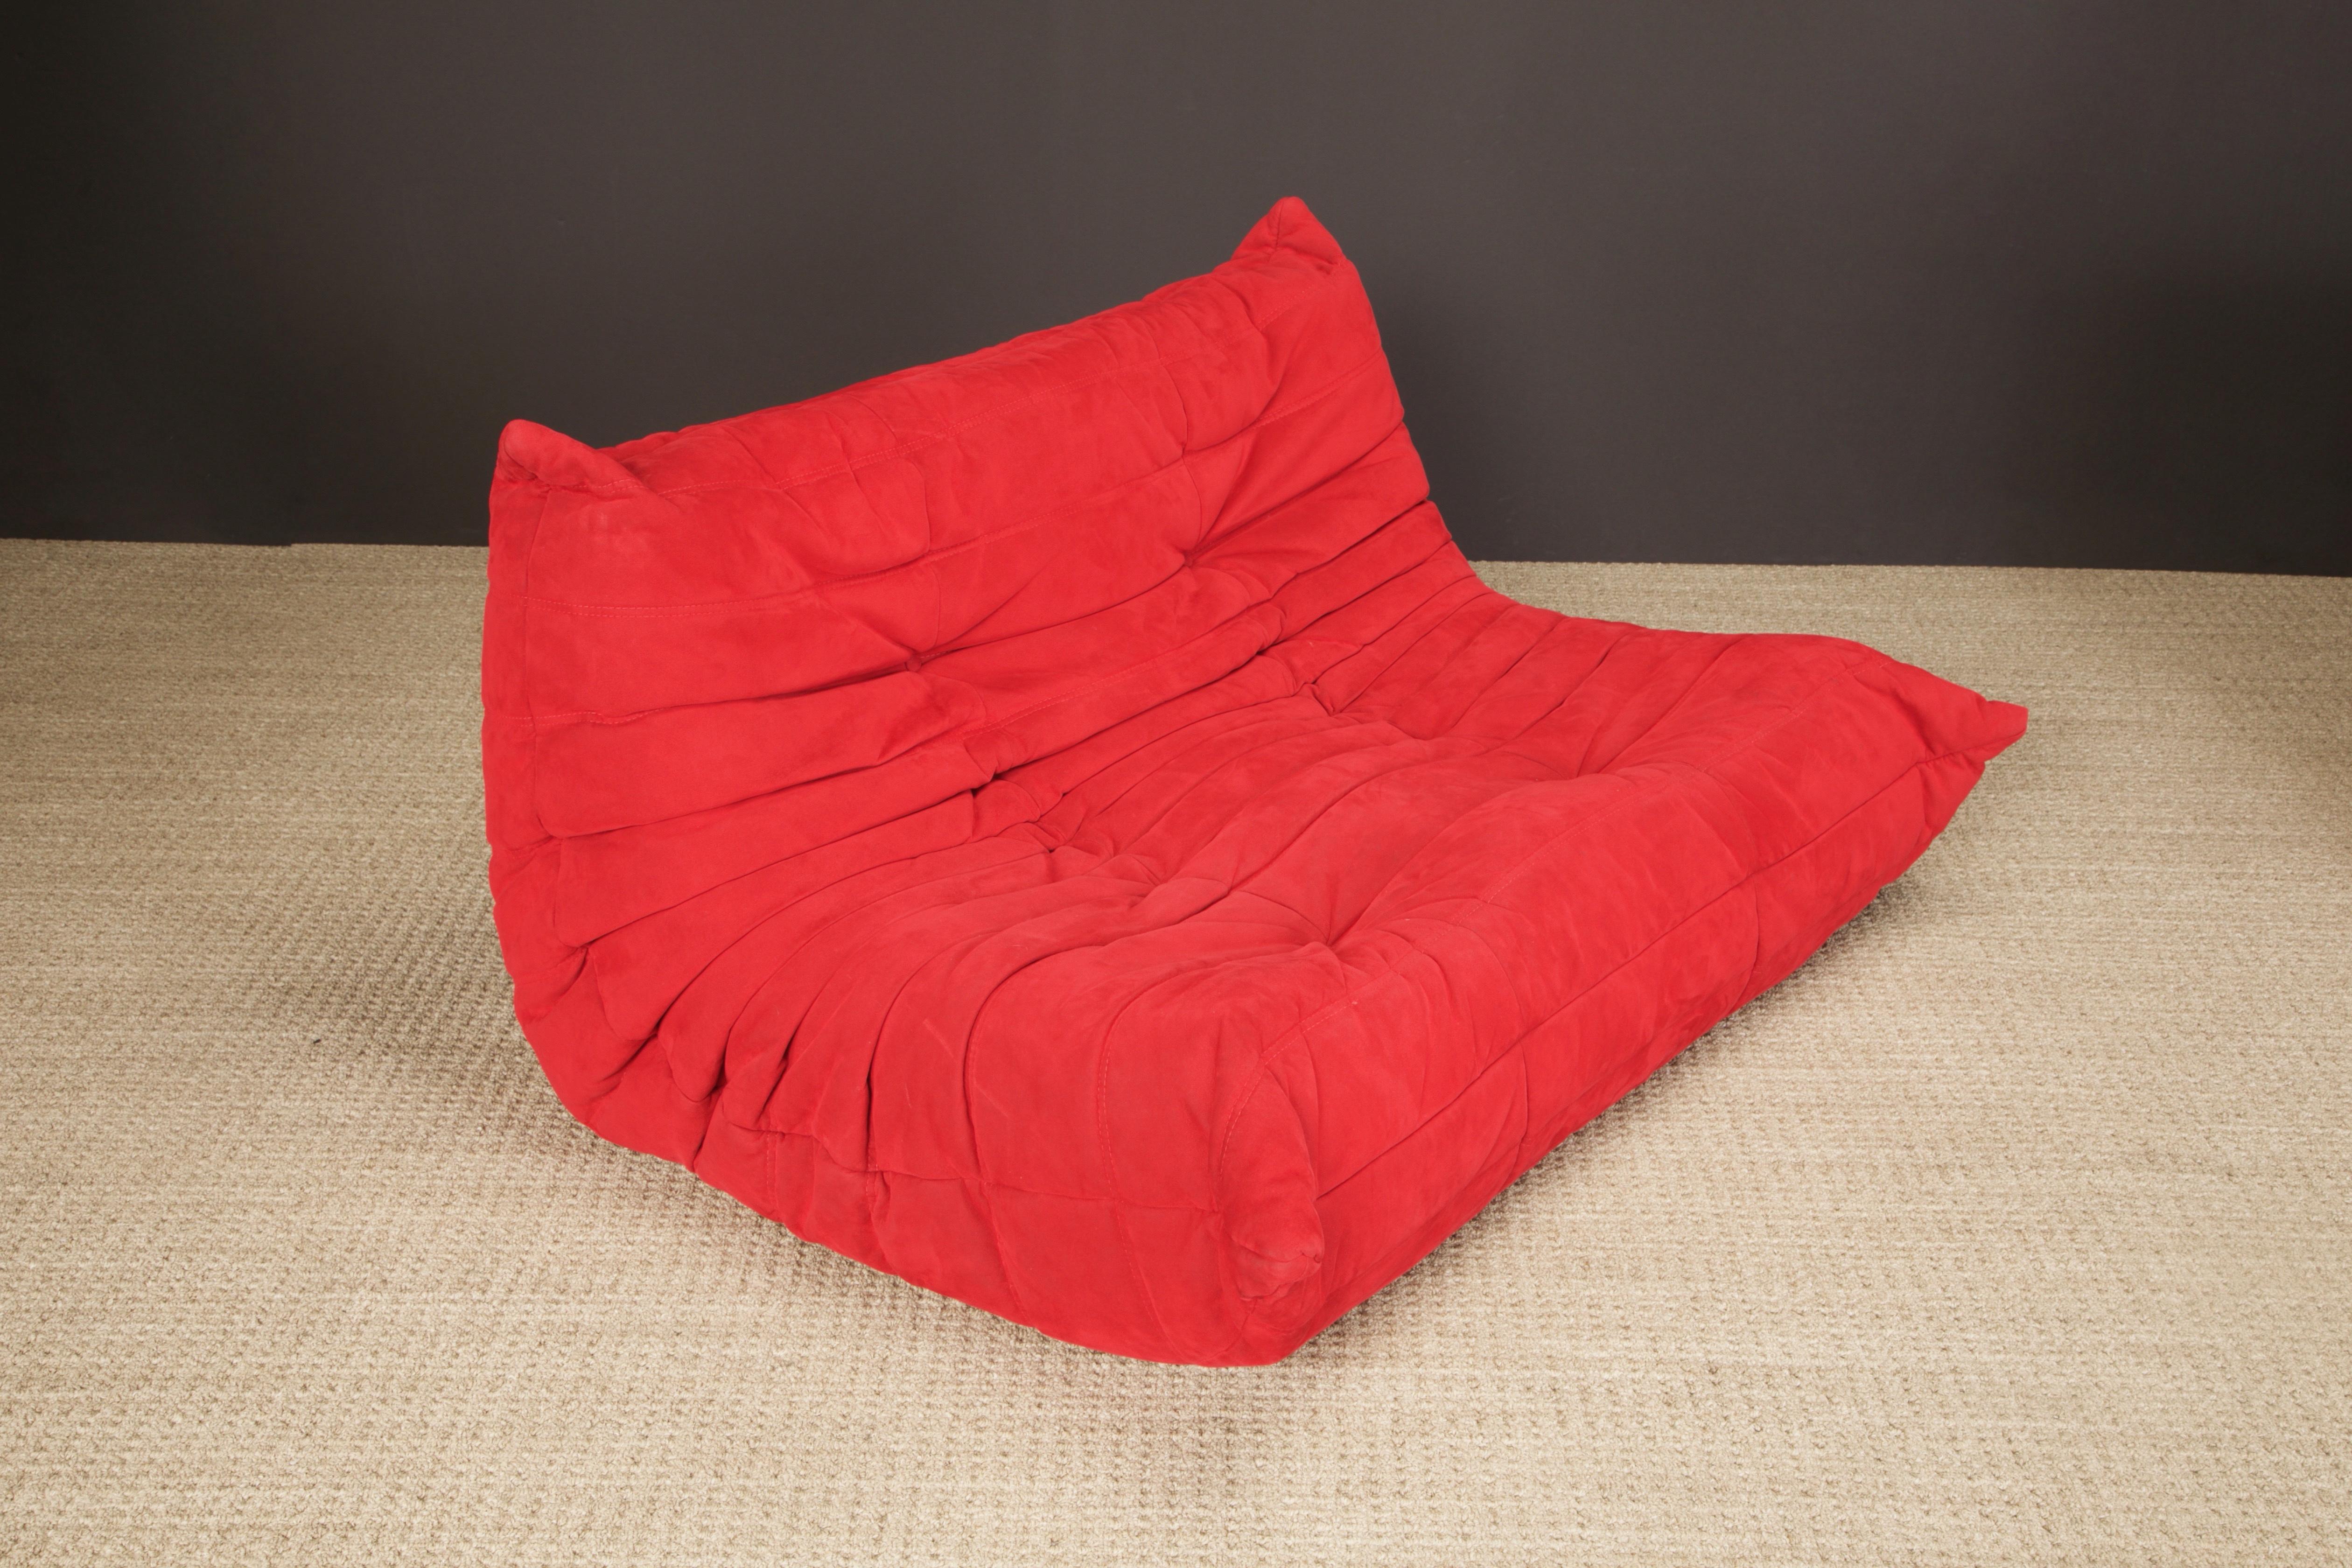 Ultrasuede 'Togo' Sectional Sofa Set by Michel Ducaroy for Ligne Roset, Signed